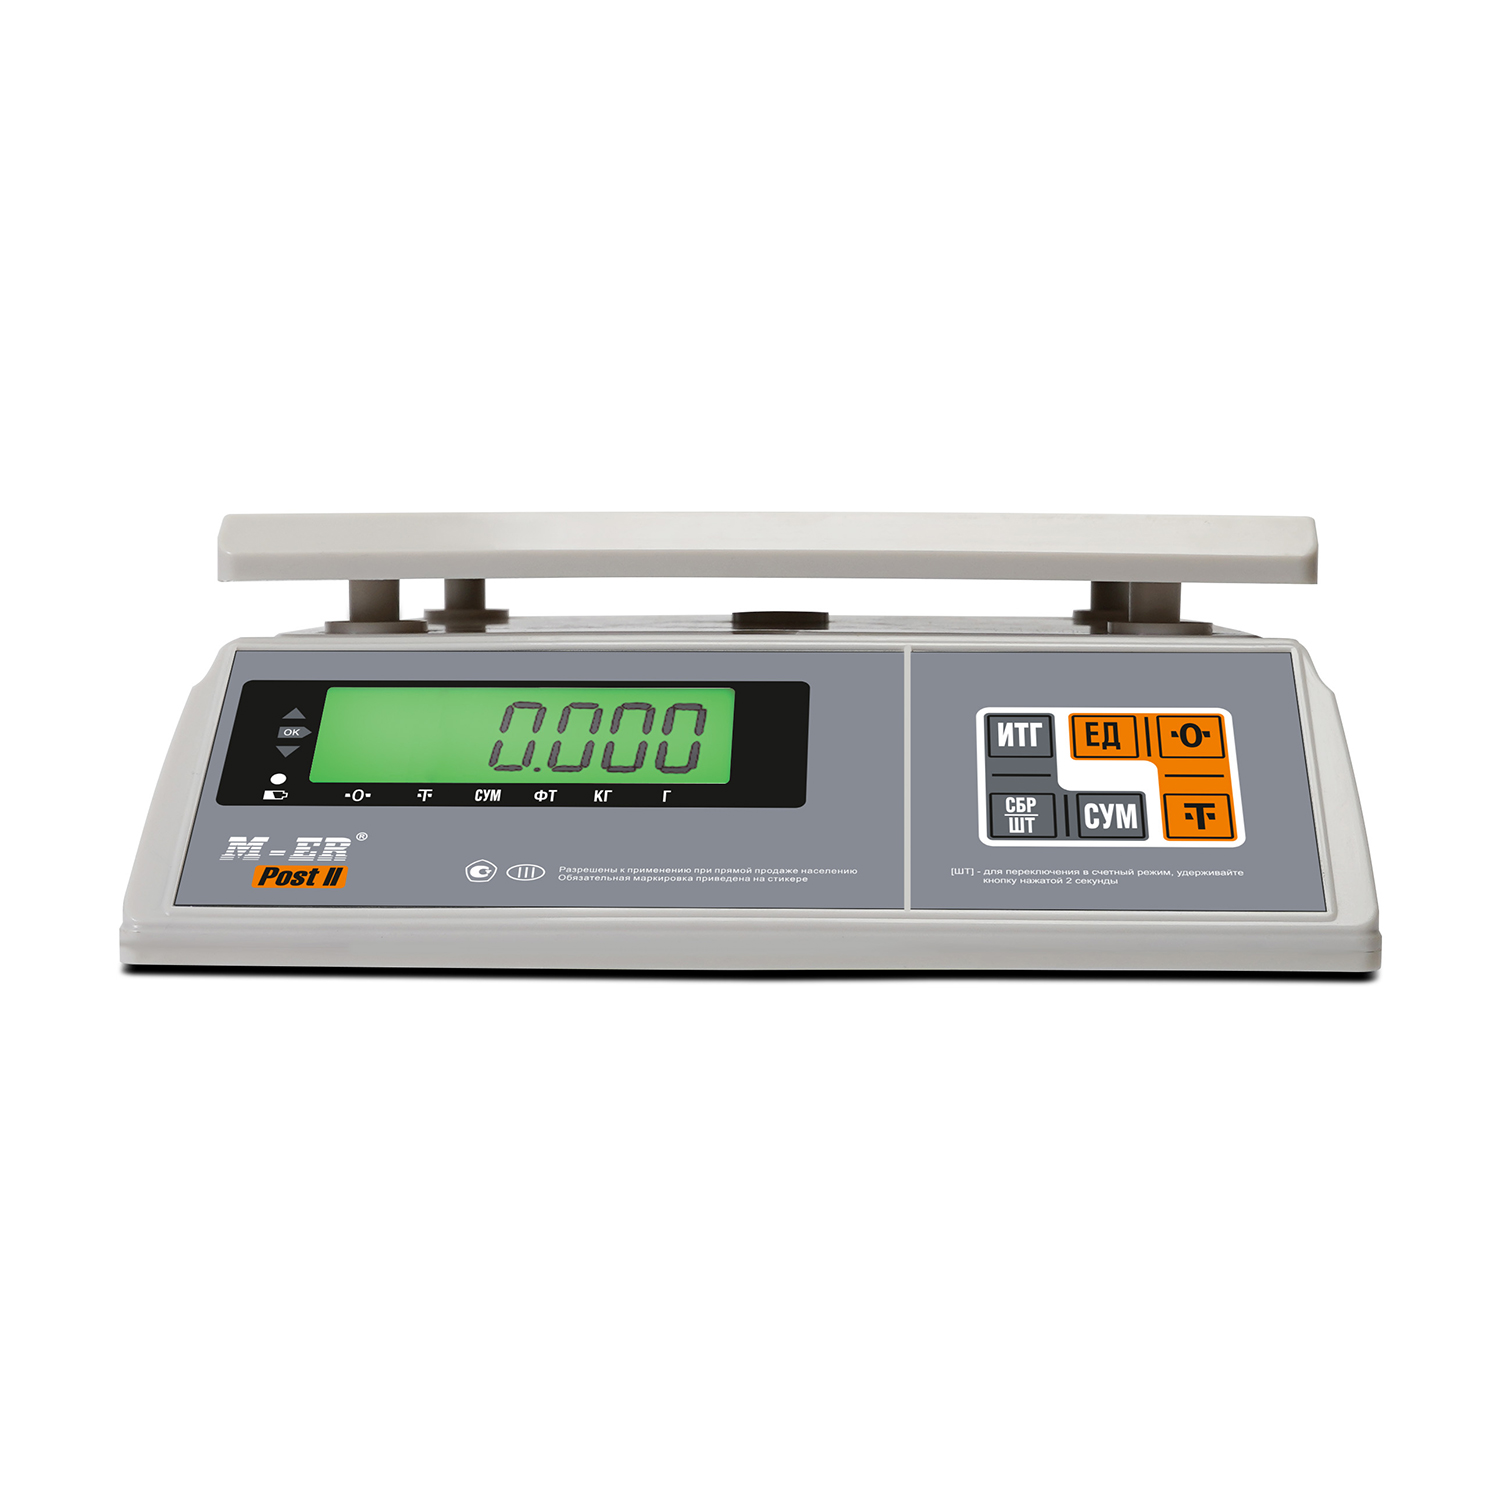 Порционные весы M-ER 326 AFU-15.1 "Post II" LCD RS-232 (3098)